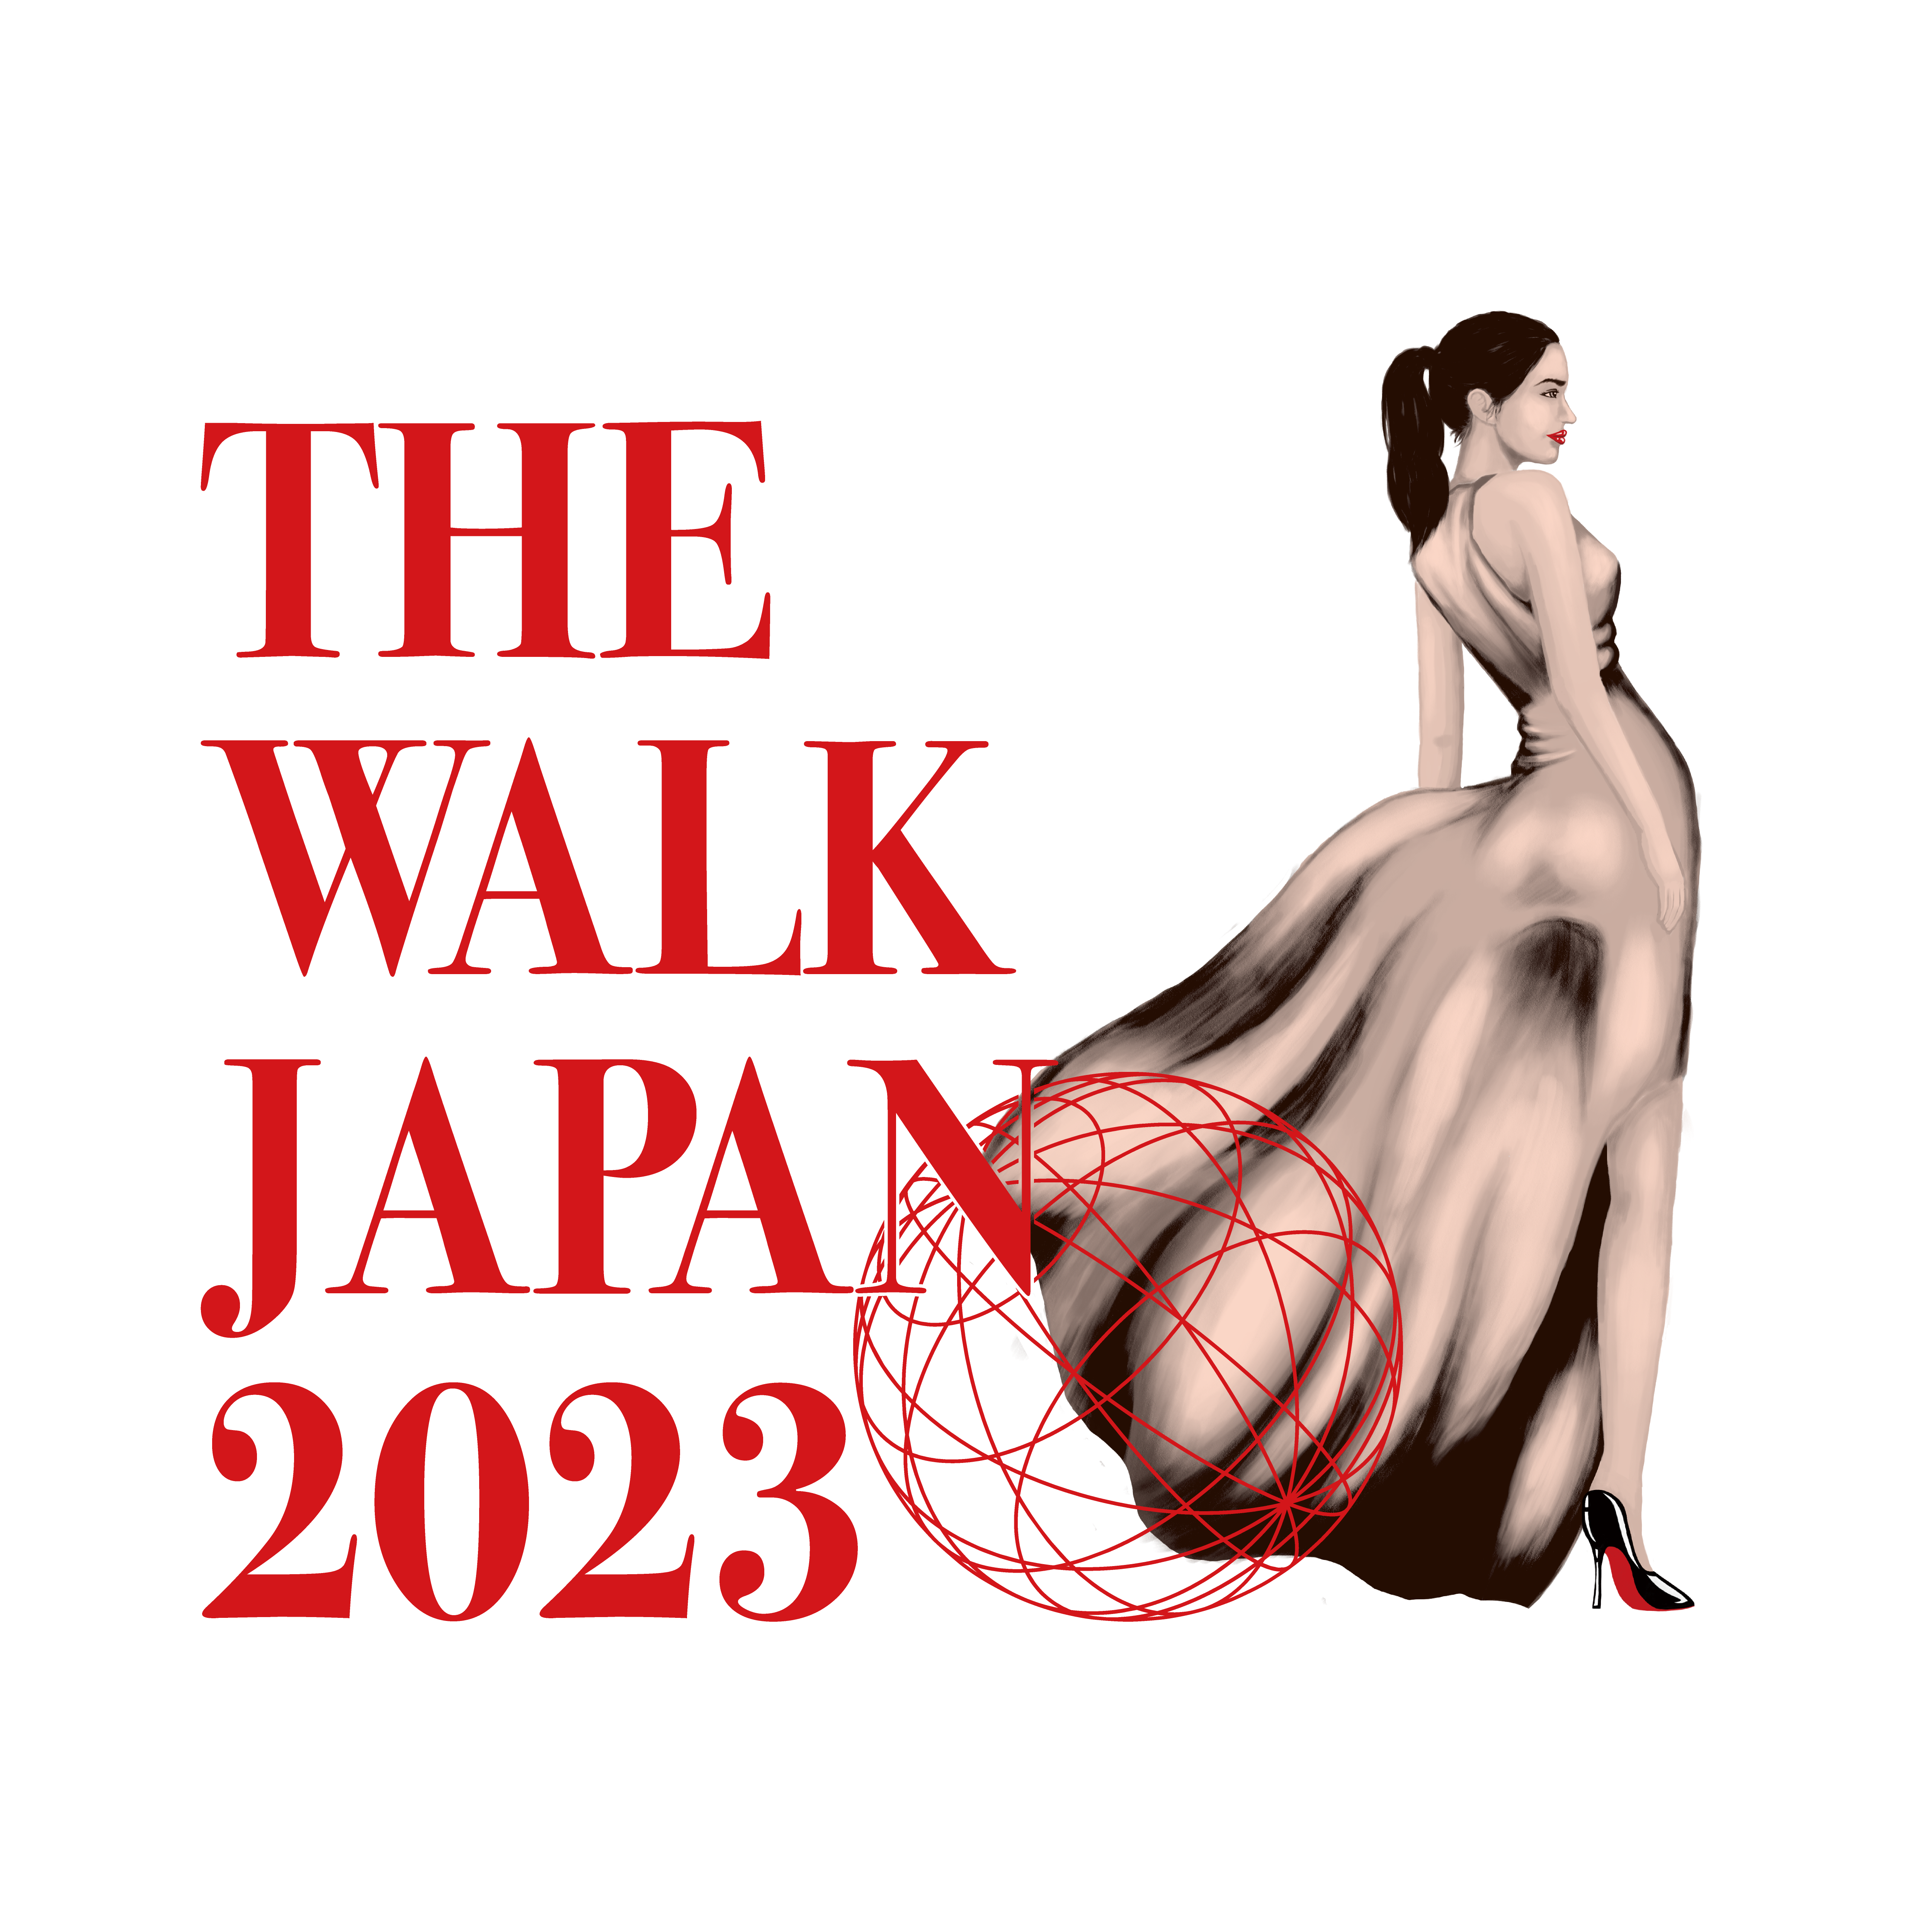 THE WALK JAPAN TOHOKU